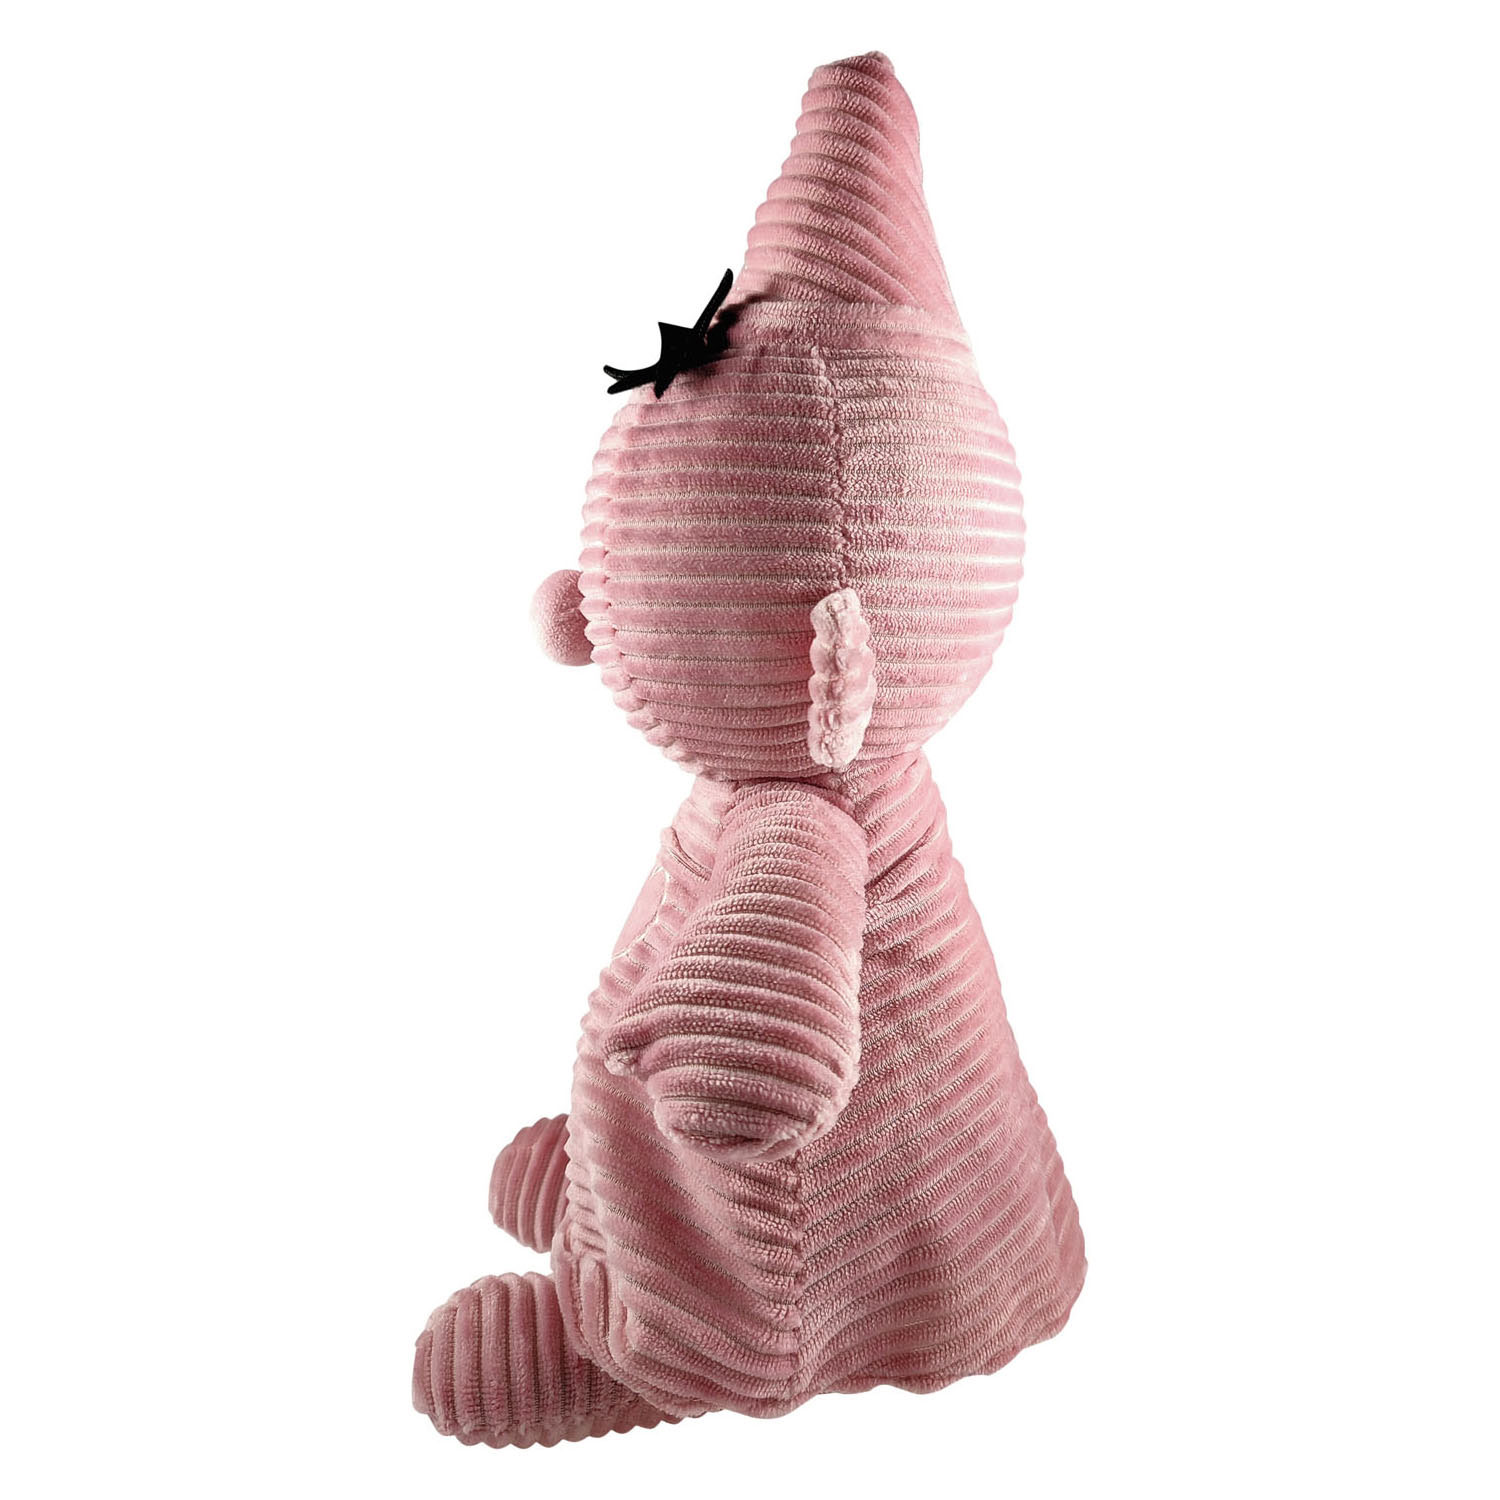 Bumba Plüschtier Corduroy Pink, 35 cm